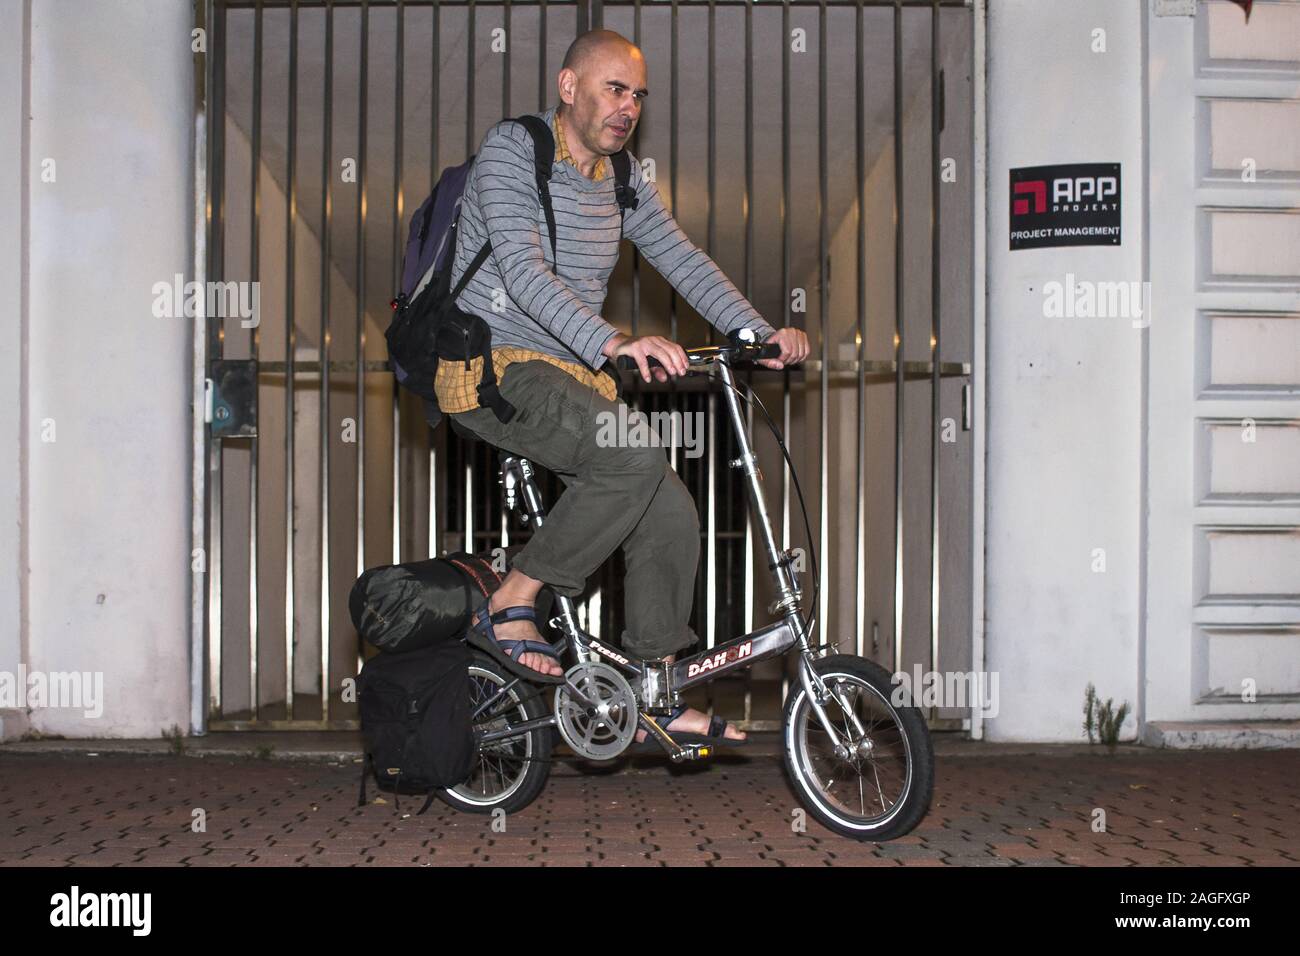 Homme mûr sur un vélo Dahon pliés Banque D'Images